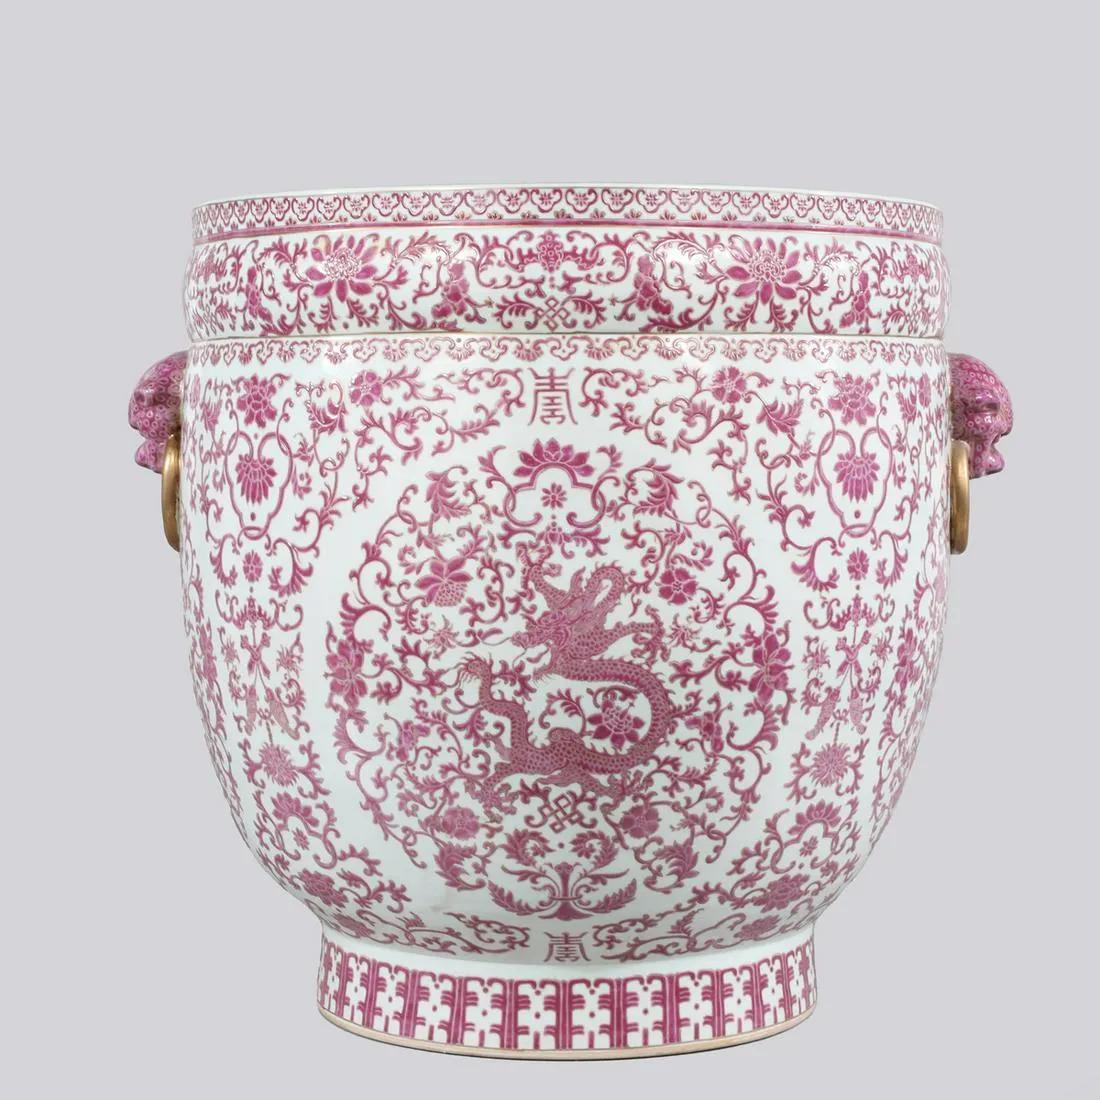 Paire de jardinières en porcelaine de Chine avec dragon rose et blanc, période de la République.

Élevez votre espace de vie avec une touche d'élégance intemporelle grâce à cette exquise paire de jardinières massives en porcelaine chinoise.